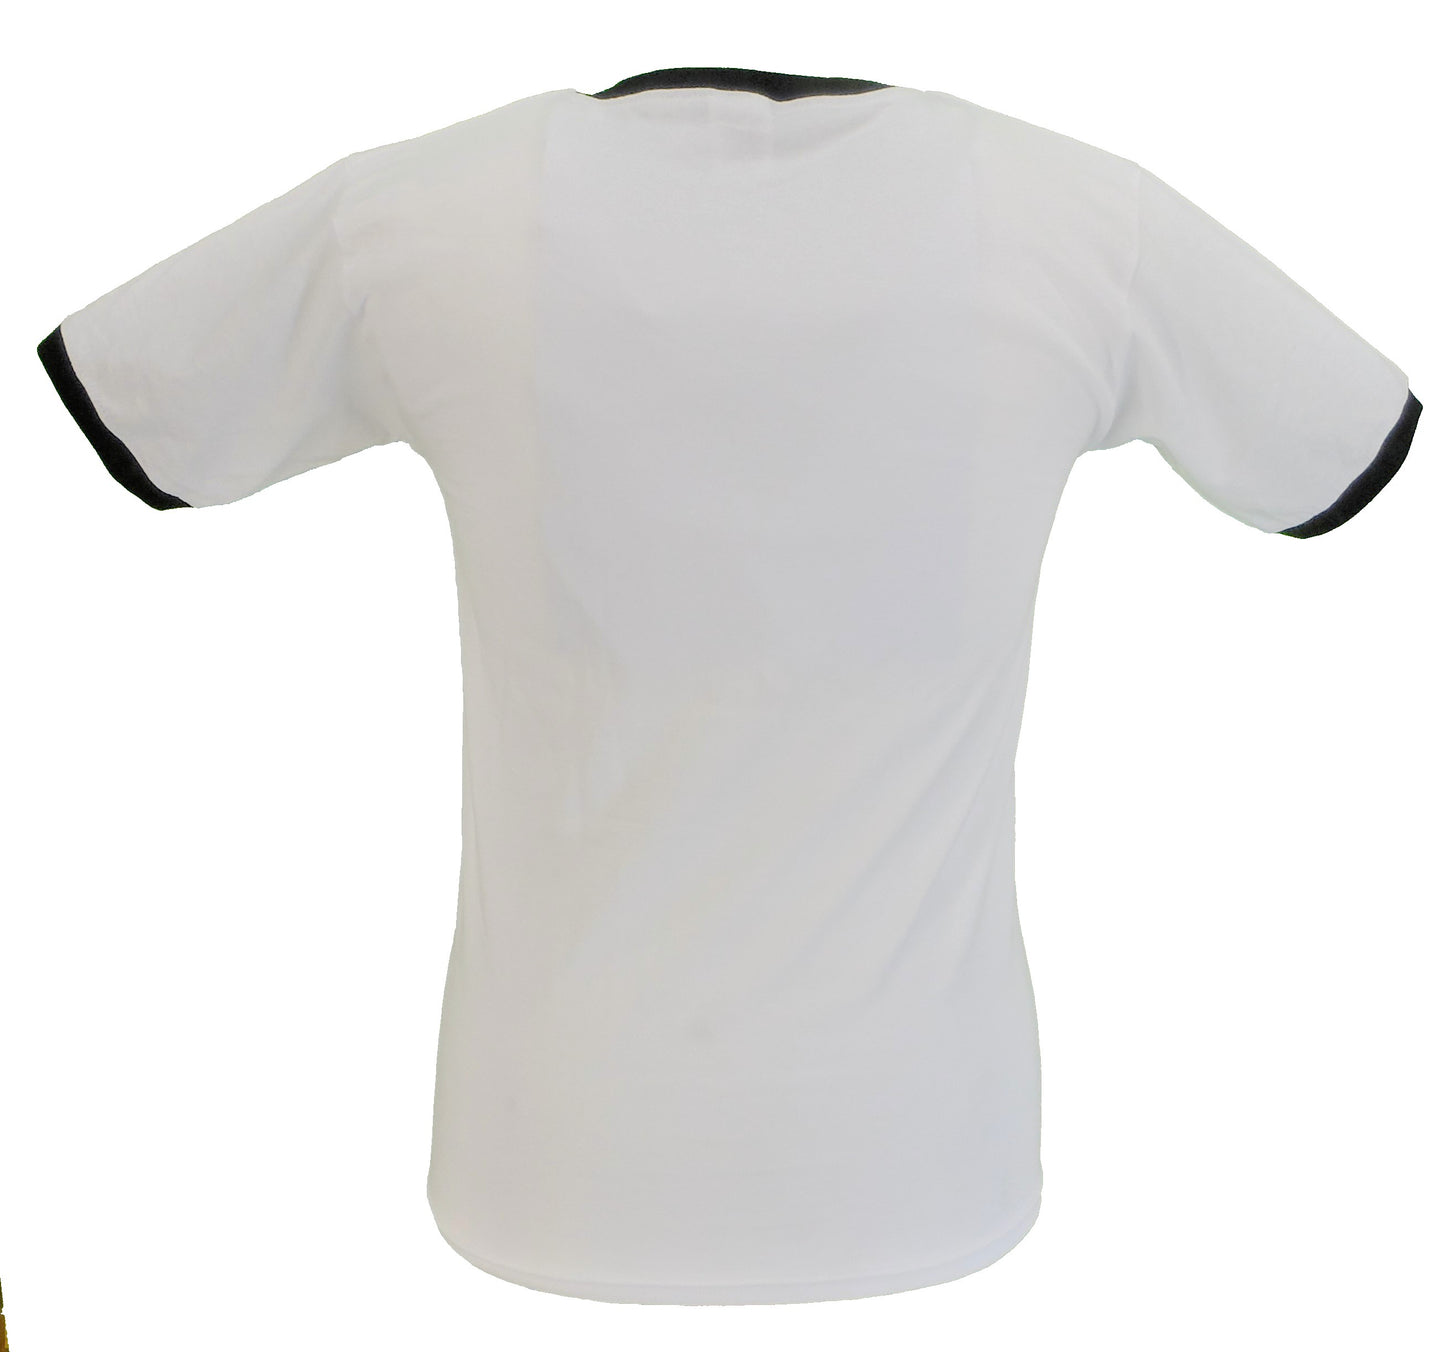 Camiseta blanca oficial Madness walt retro ringer para hombre